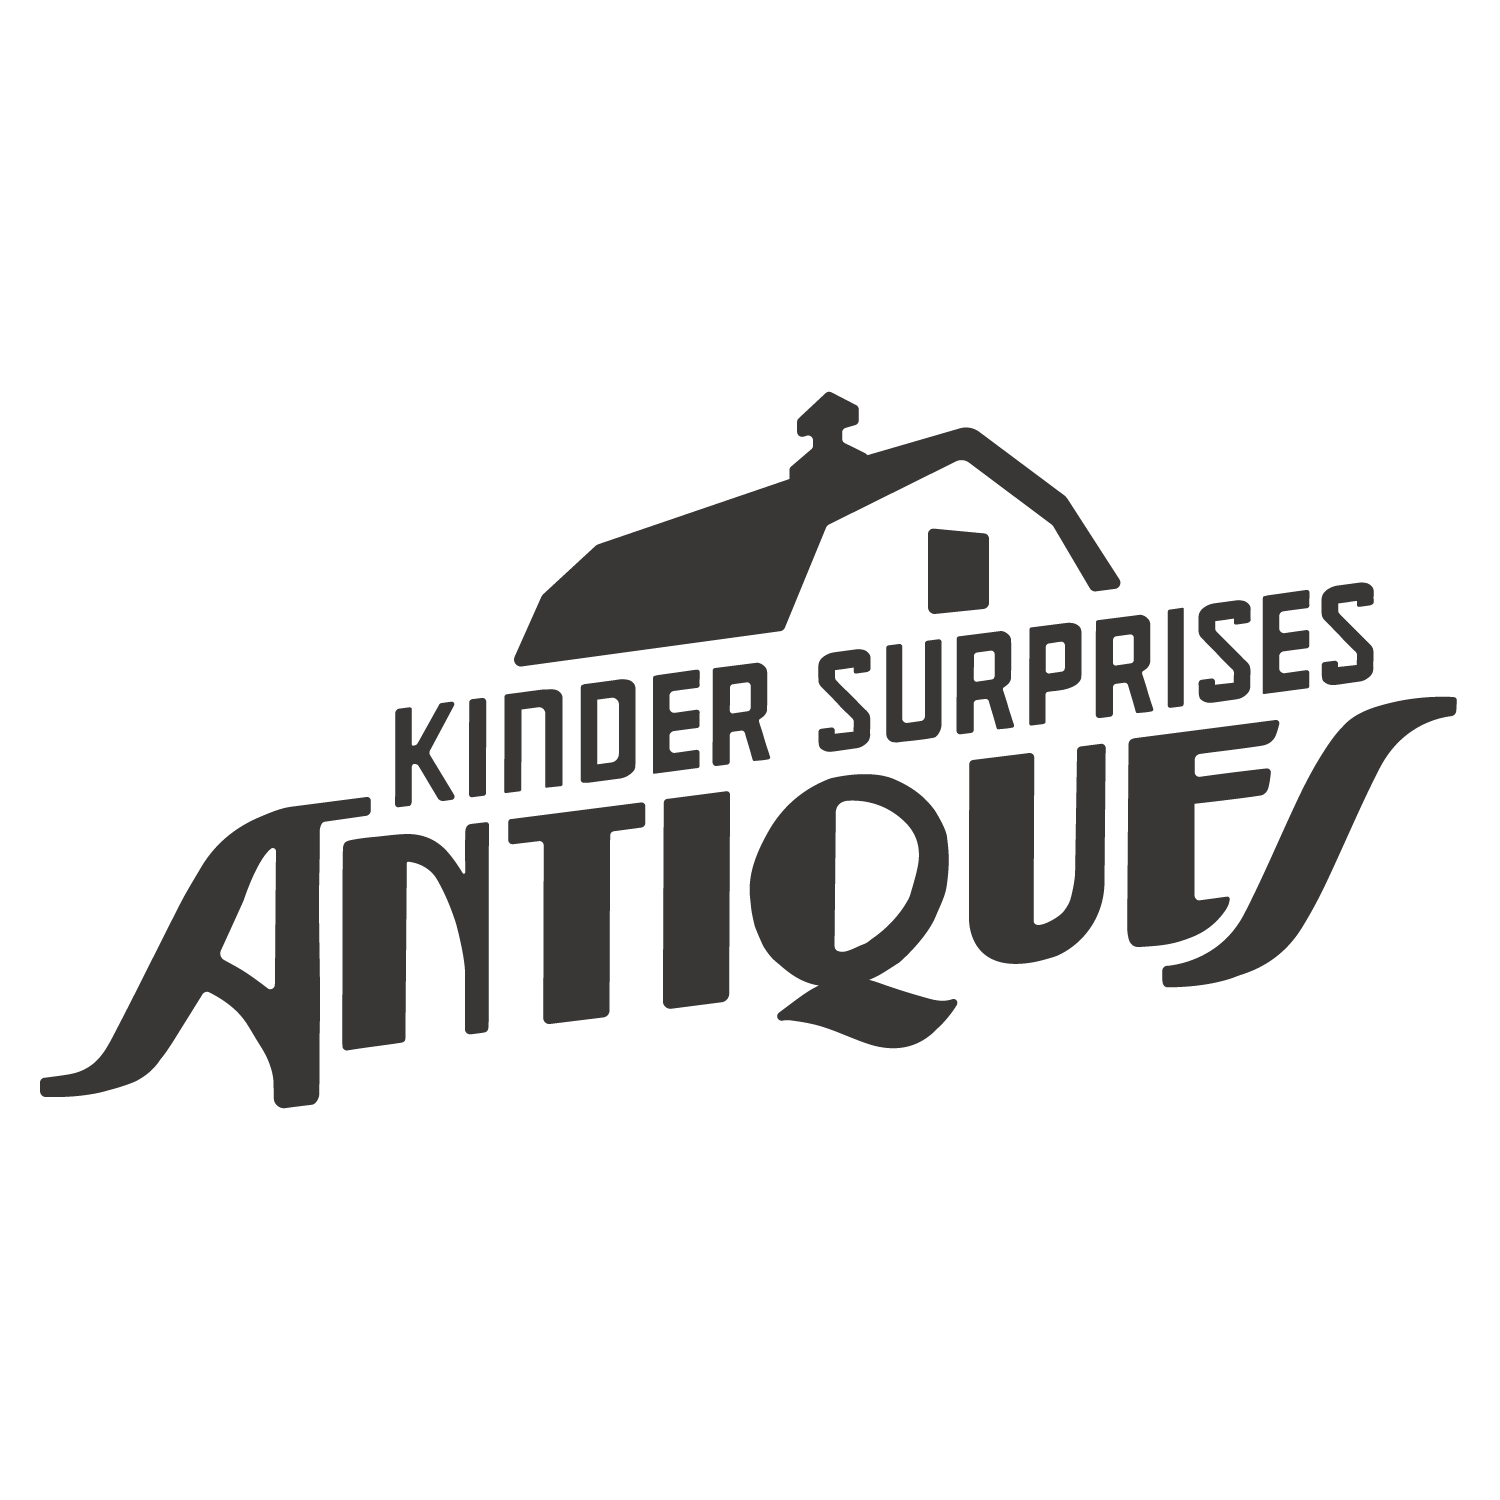 Kinder Surprises Antiques